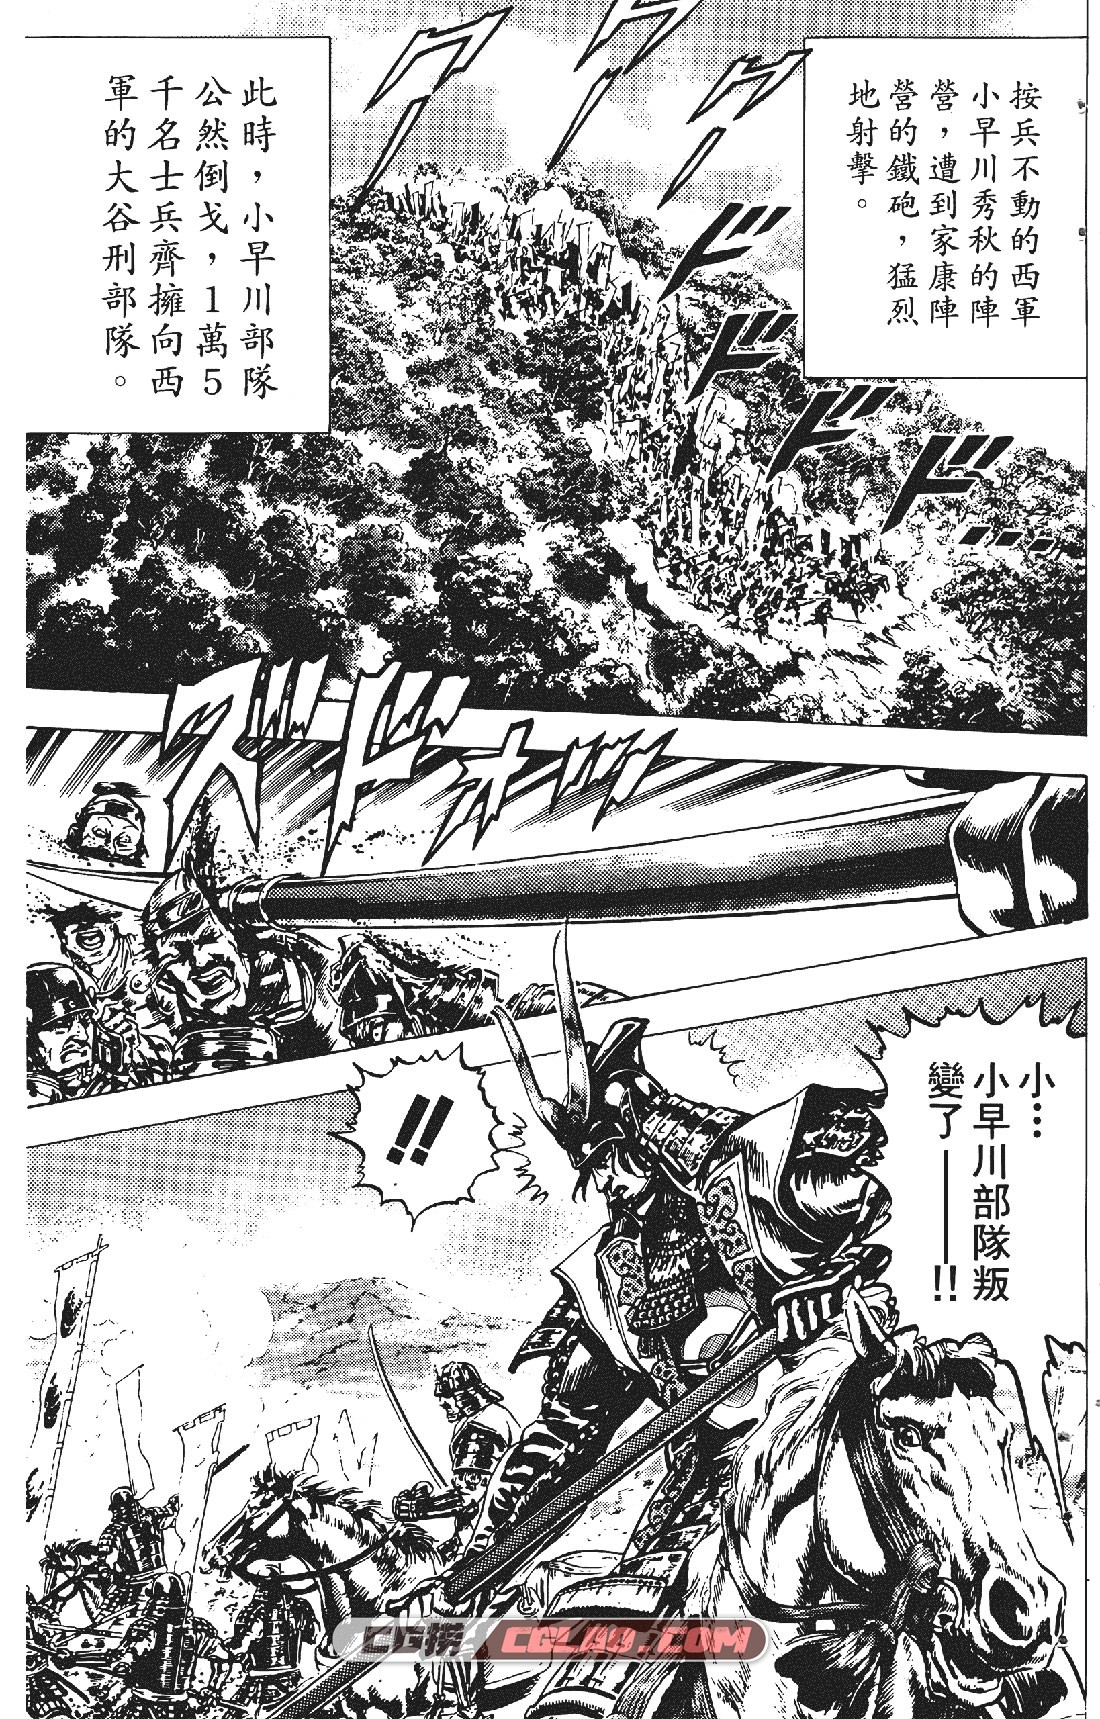 破军星 原哲夫 中文6卷已完结 日本战国时代热血漫画下载,破軍星第1卷037.jpg